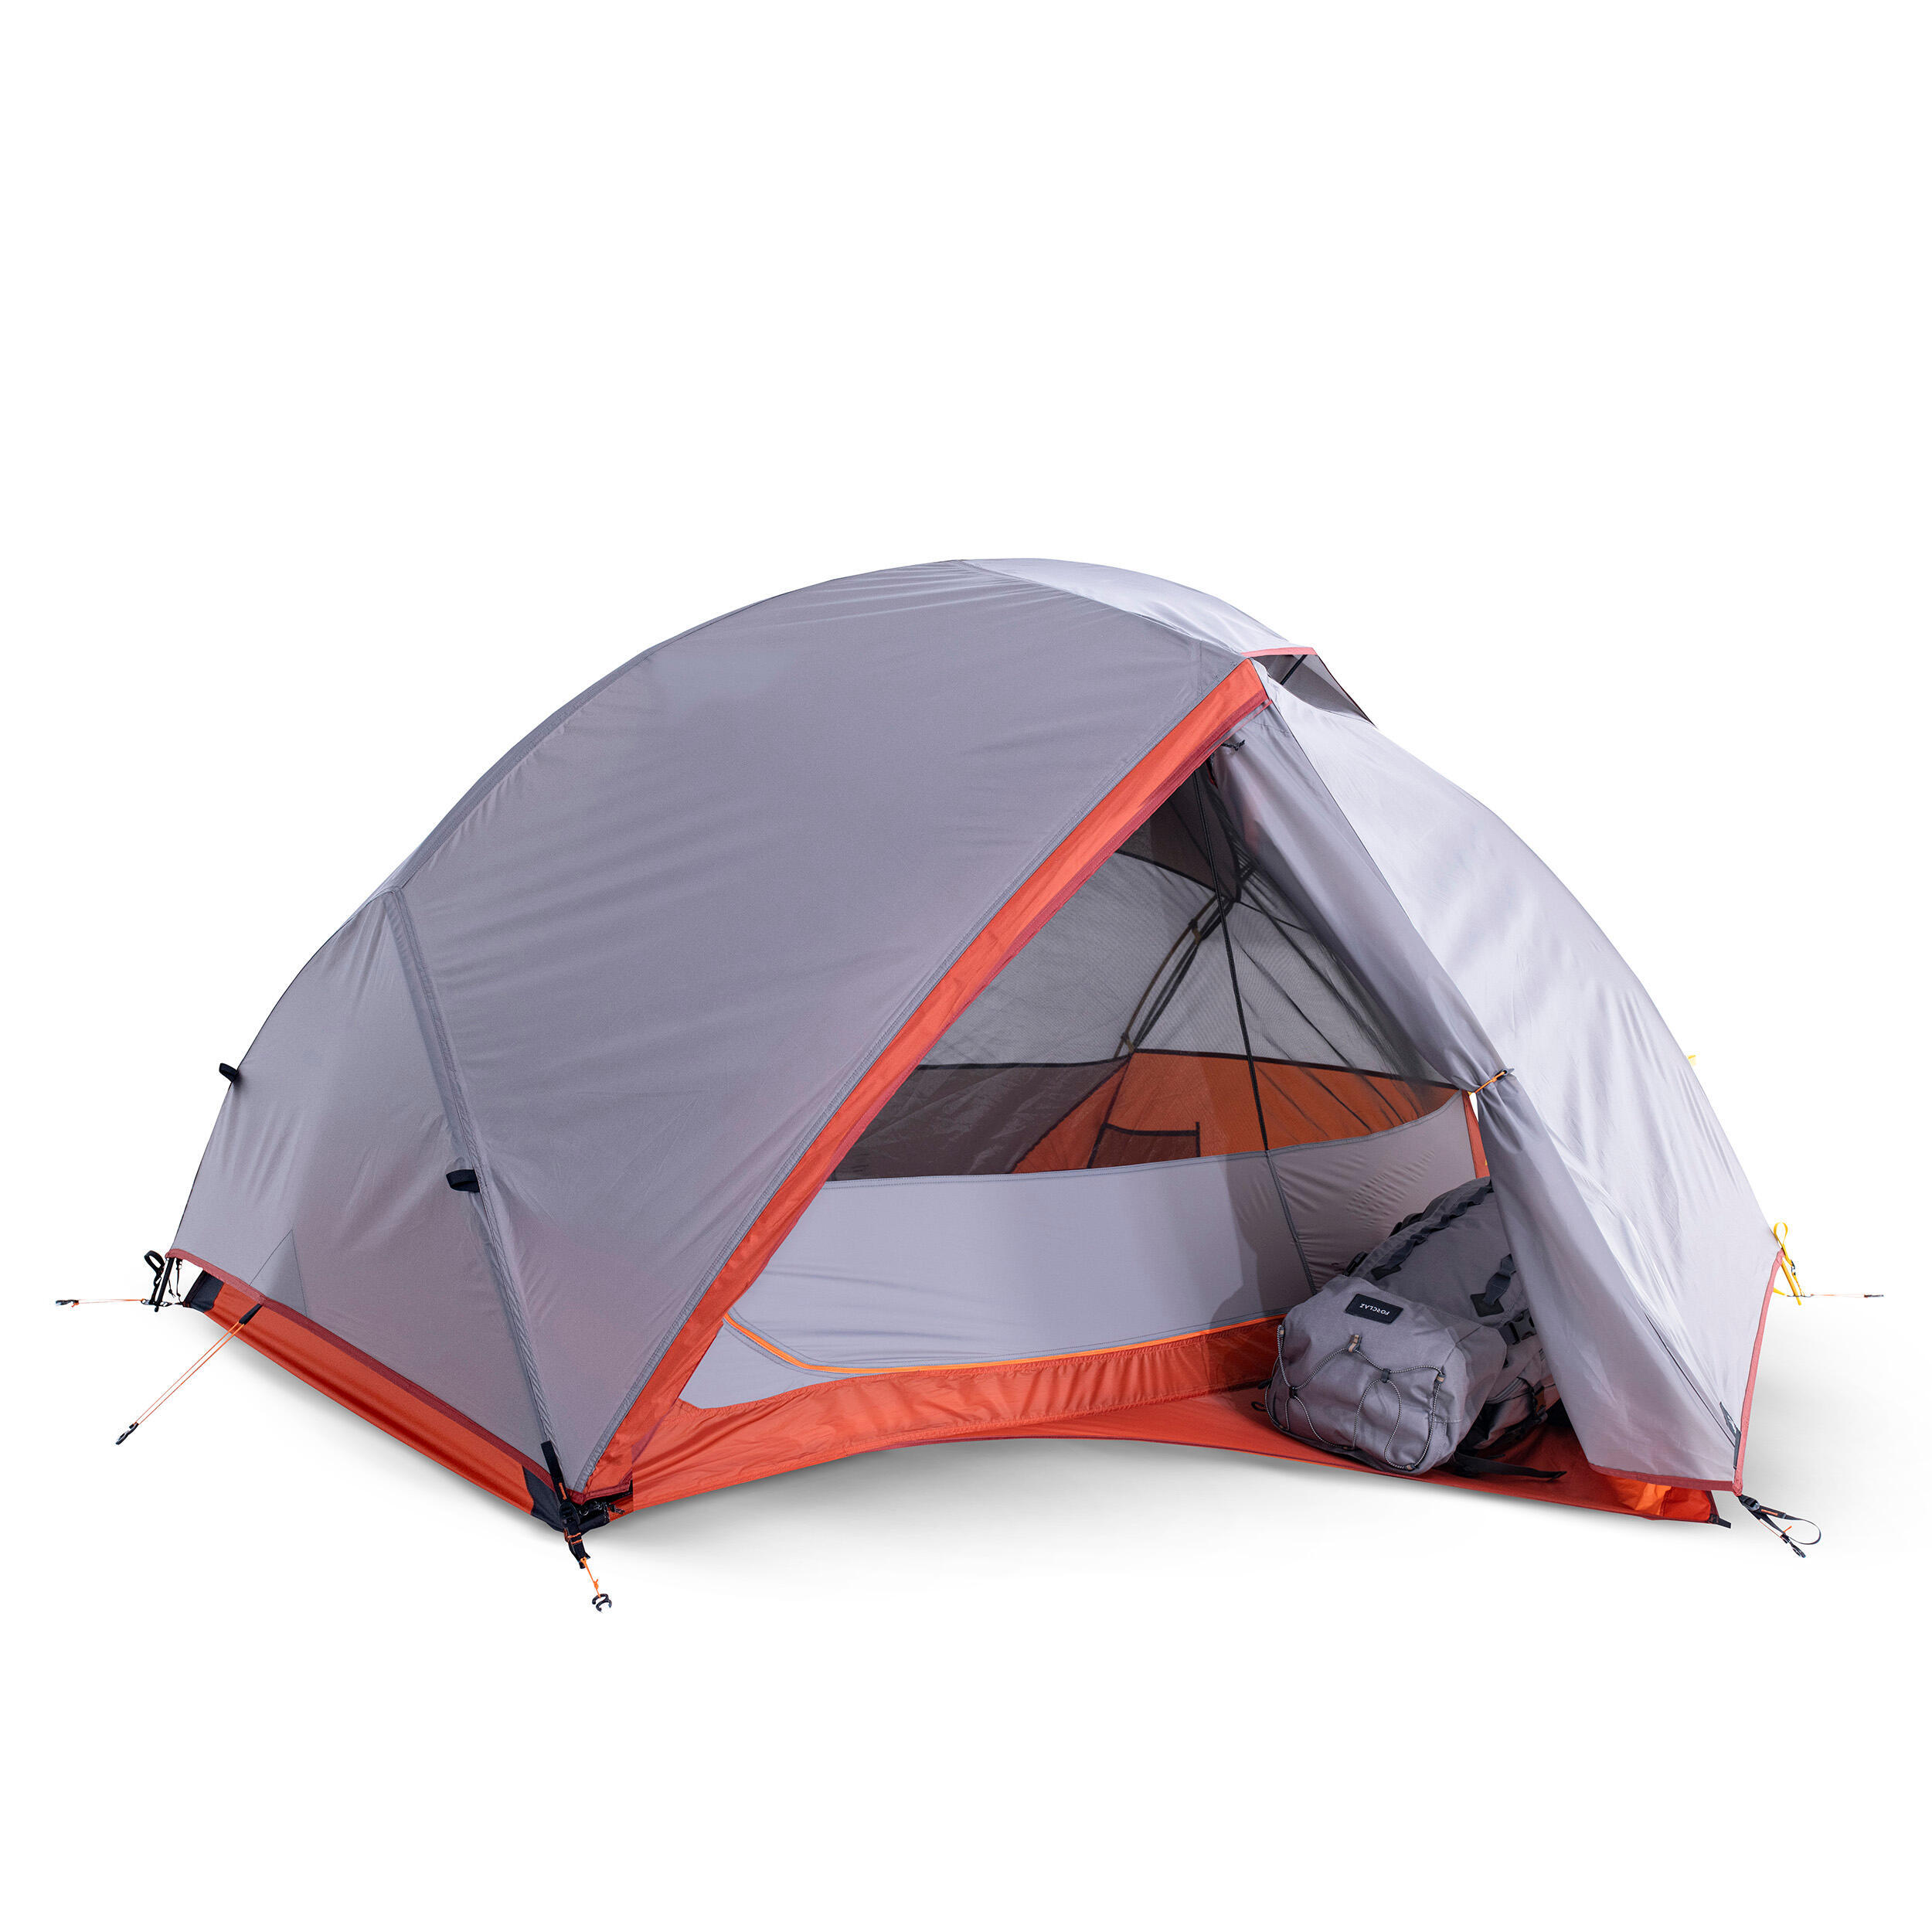 Палатка туристическая трехсезонная Forclaz Trek 900 2х-местная, серый палатка туристическая atemi storm 2 cx 2 местная цвет серый